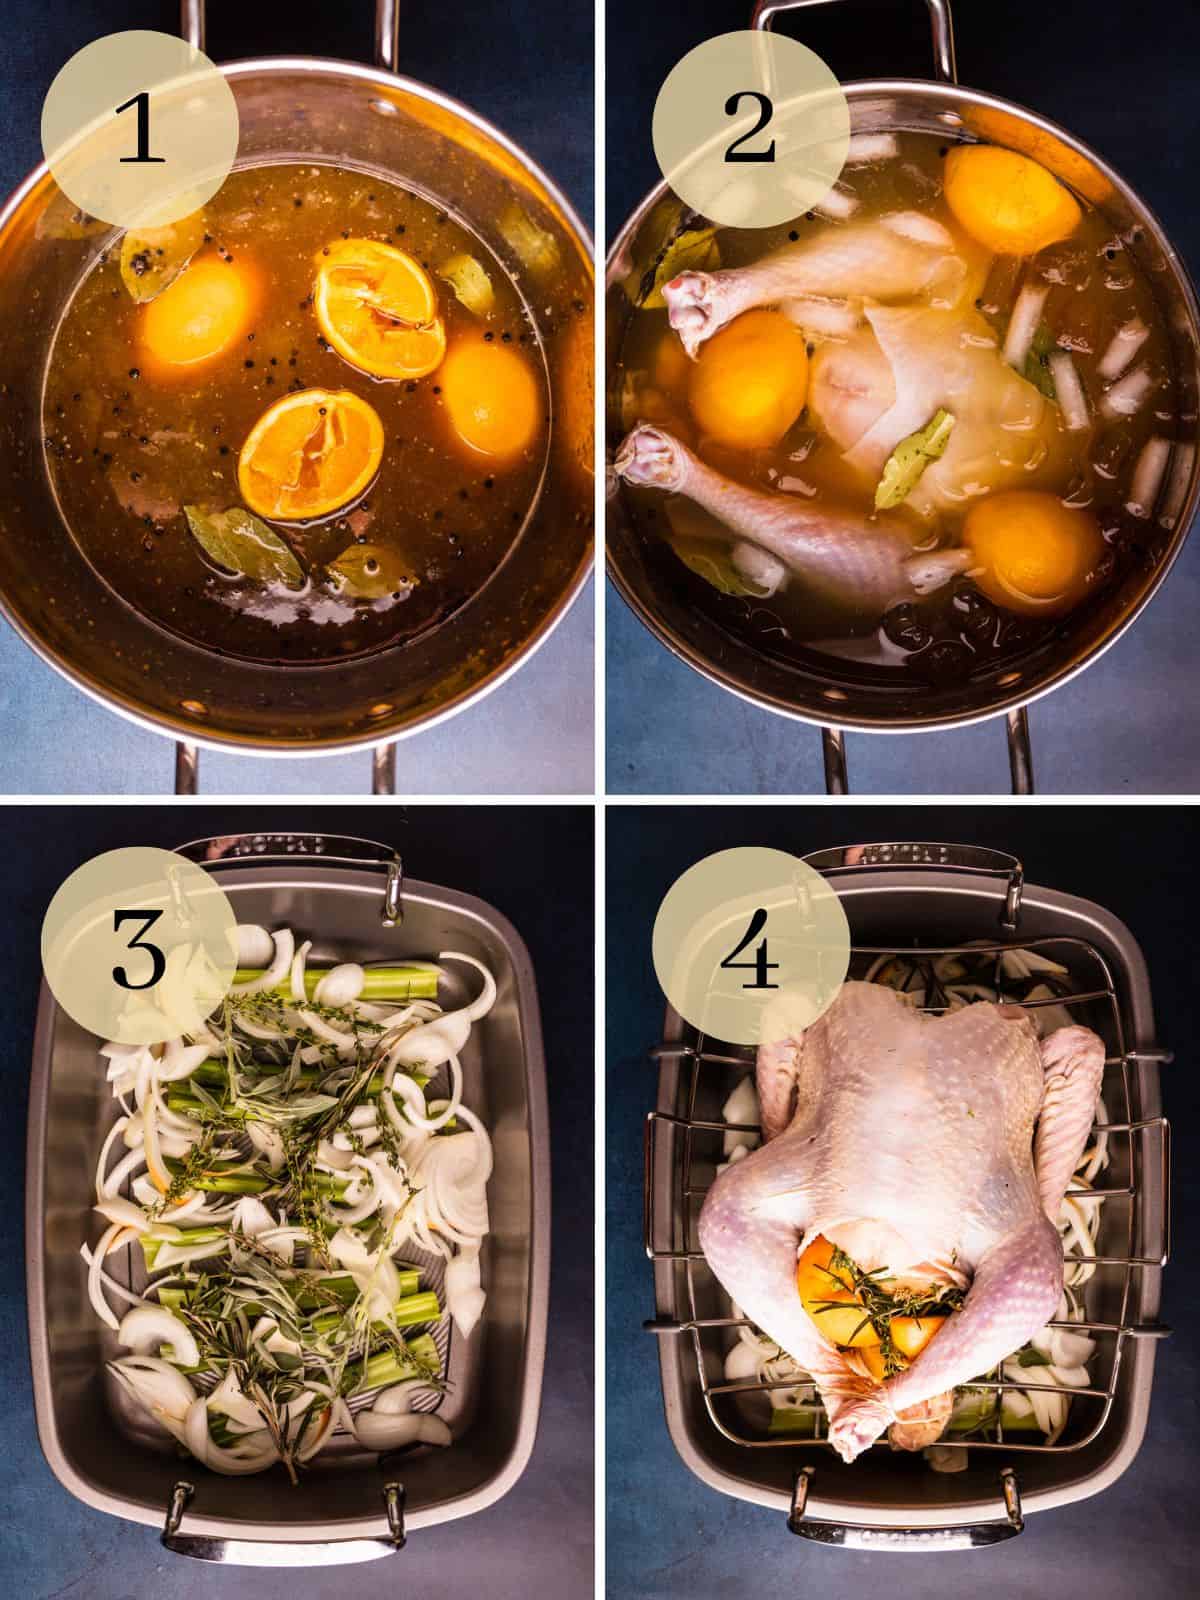 turkey brine in pot, turkey in brine, onions and herbs in pan, turkey in roasting pan.